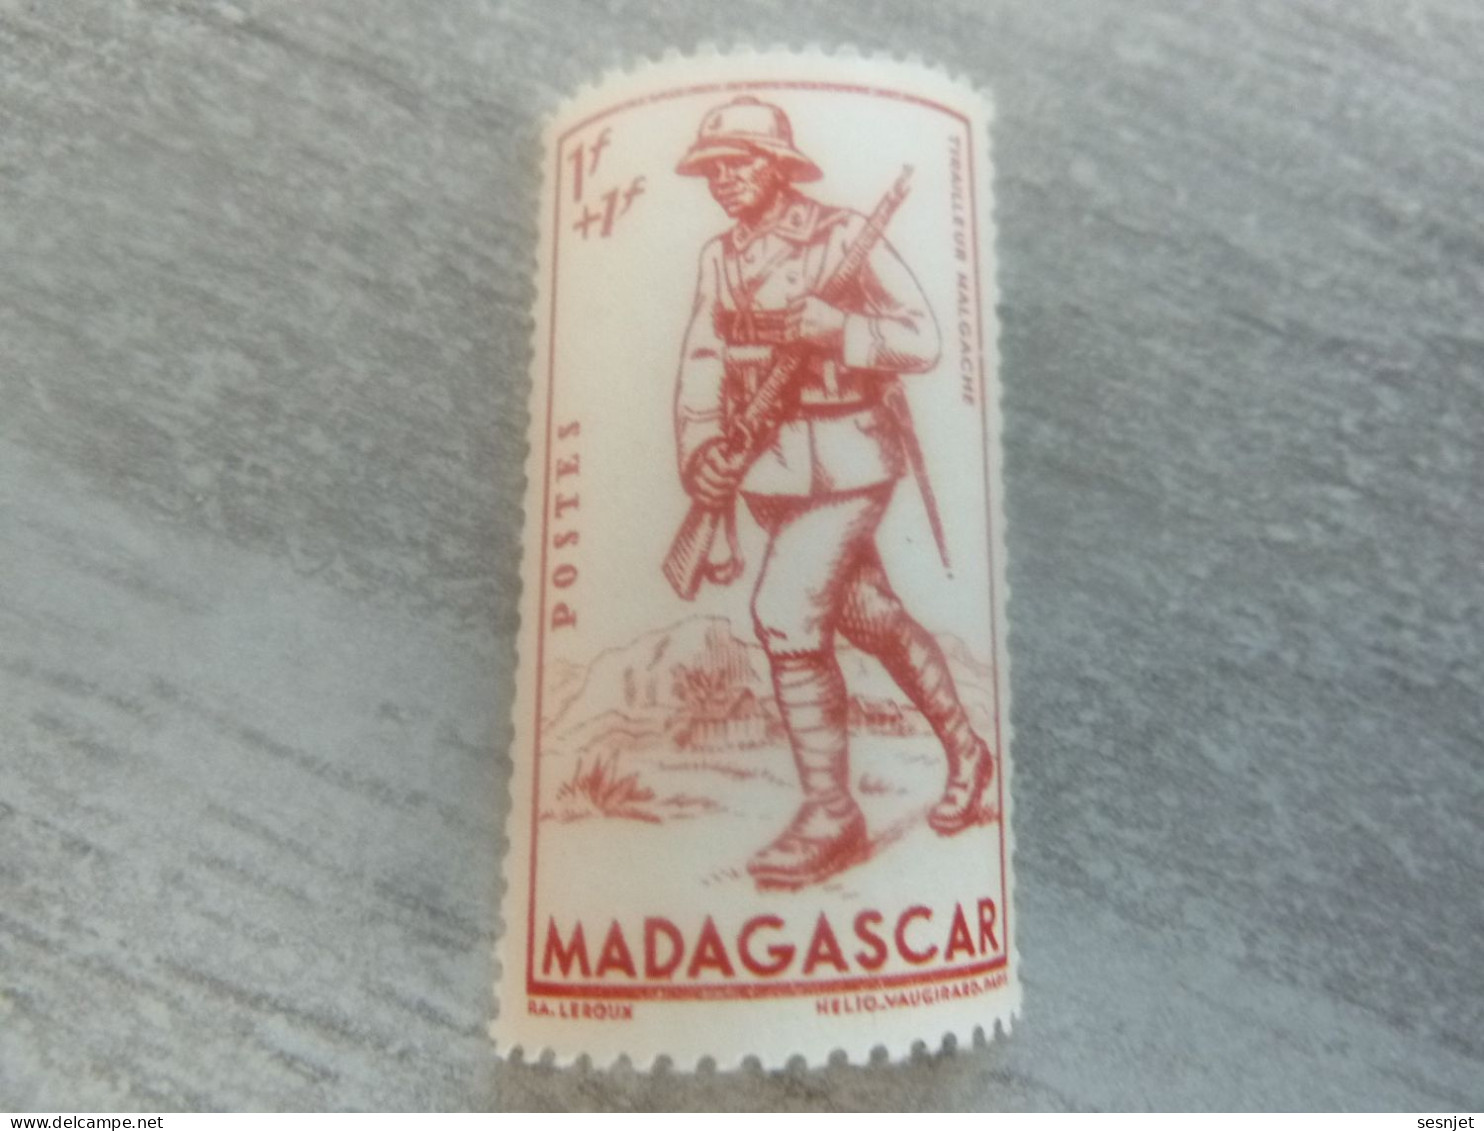 Madagascar - Tirailleur Malgache - 1f.+1f. - Yt 226 - Helio Vaugirard Paris - Rouge-orange - Neuf - Année 1941 - - Ungebraucht